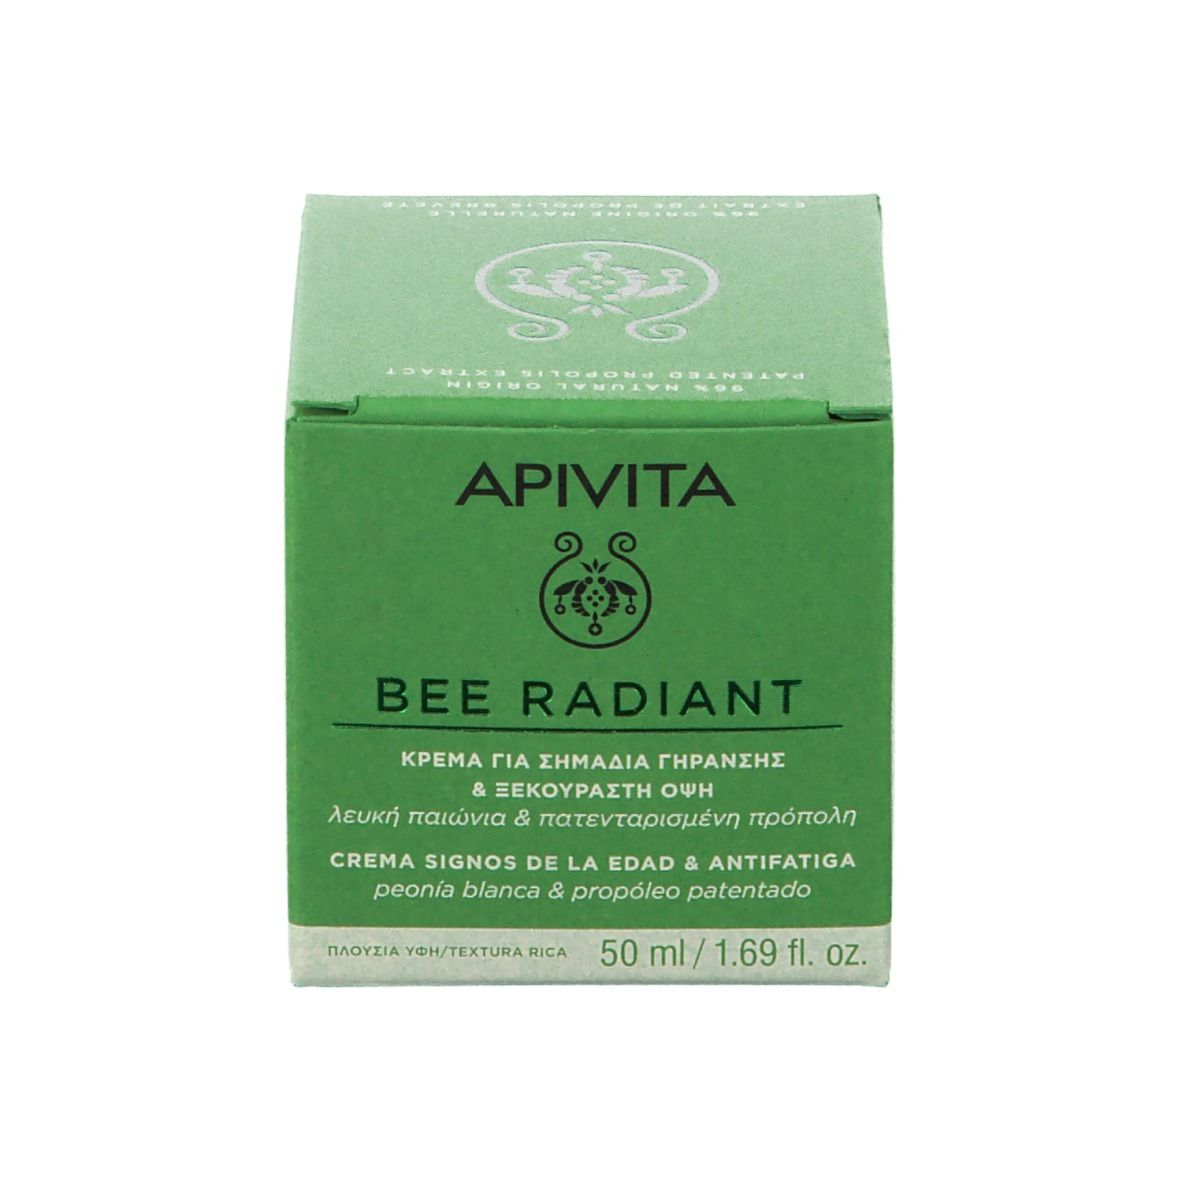 APIVITA Bee Radiant Crema Segni dell'età e Anti-Fatica - Texture Ricca